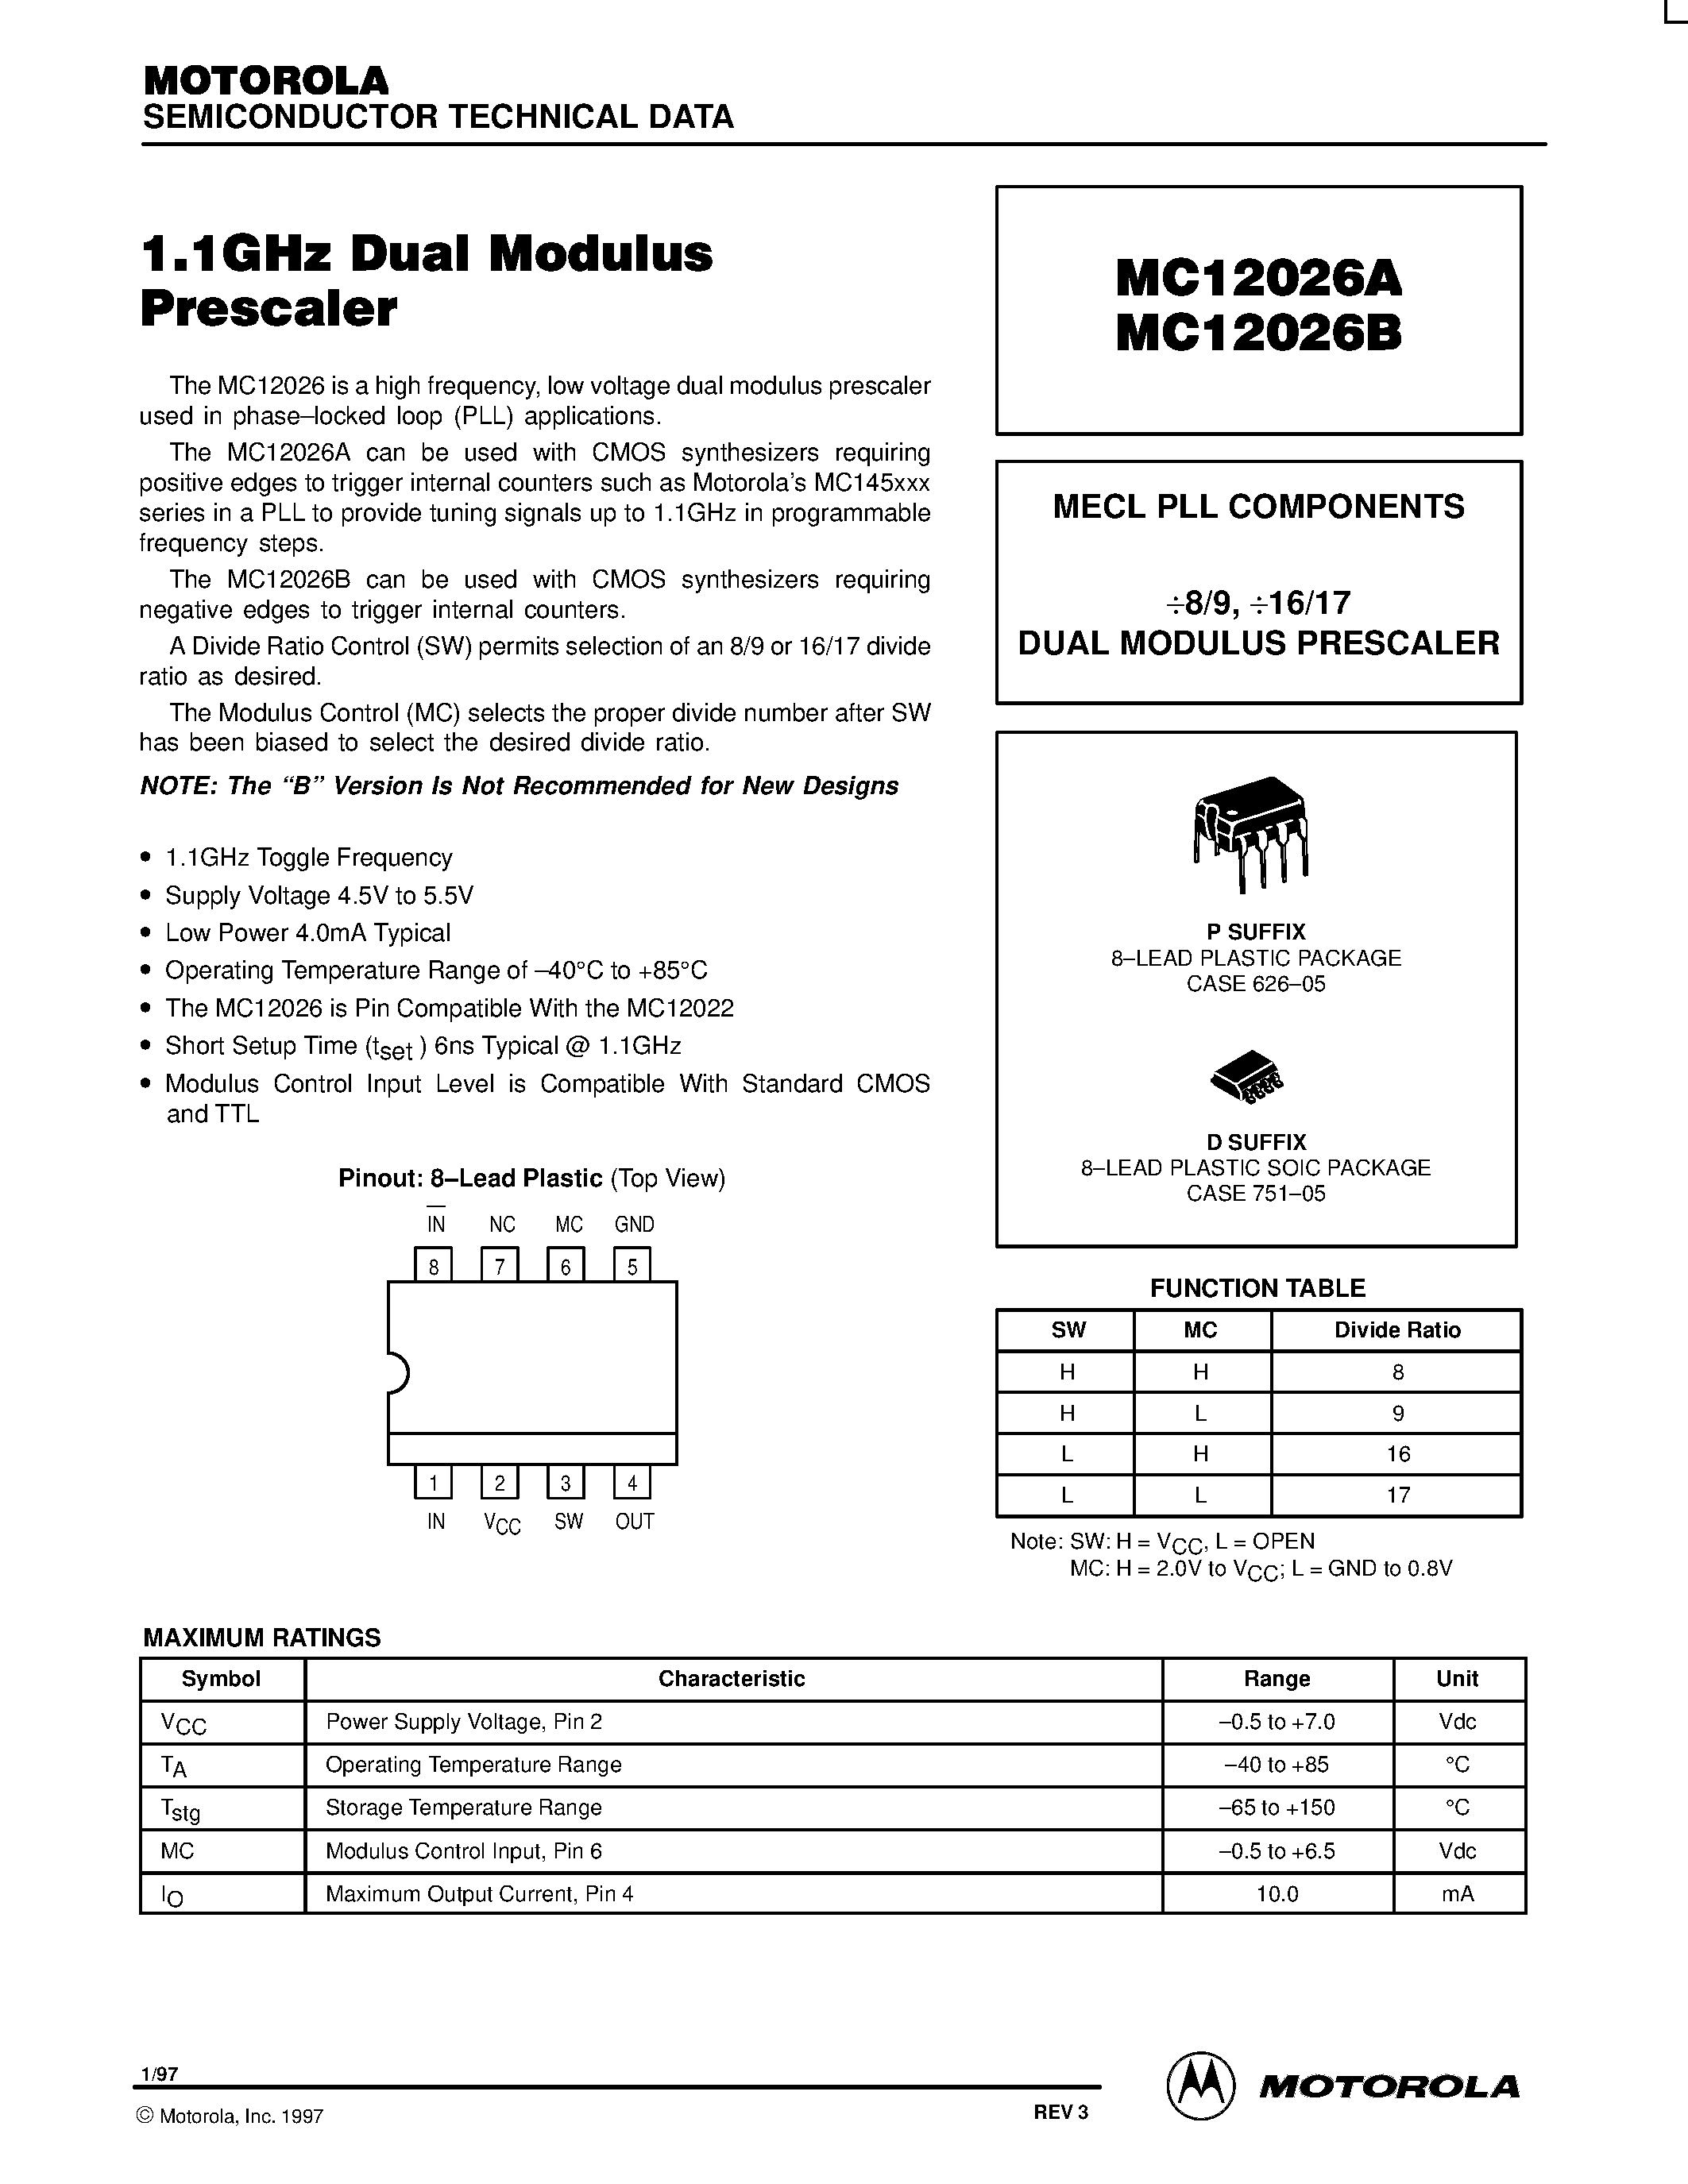 Datasheet MC12026AP - MECL PLL COMPONENTS 8/9 / 16/17 DUAL MODULUS PRESCALER page 1